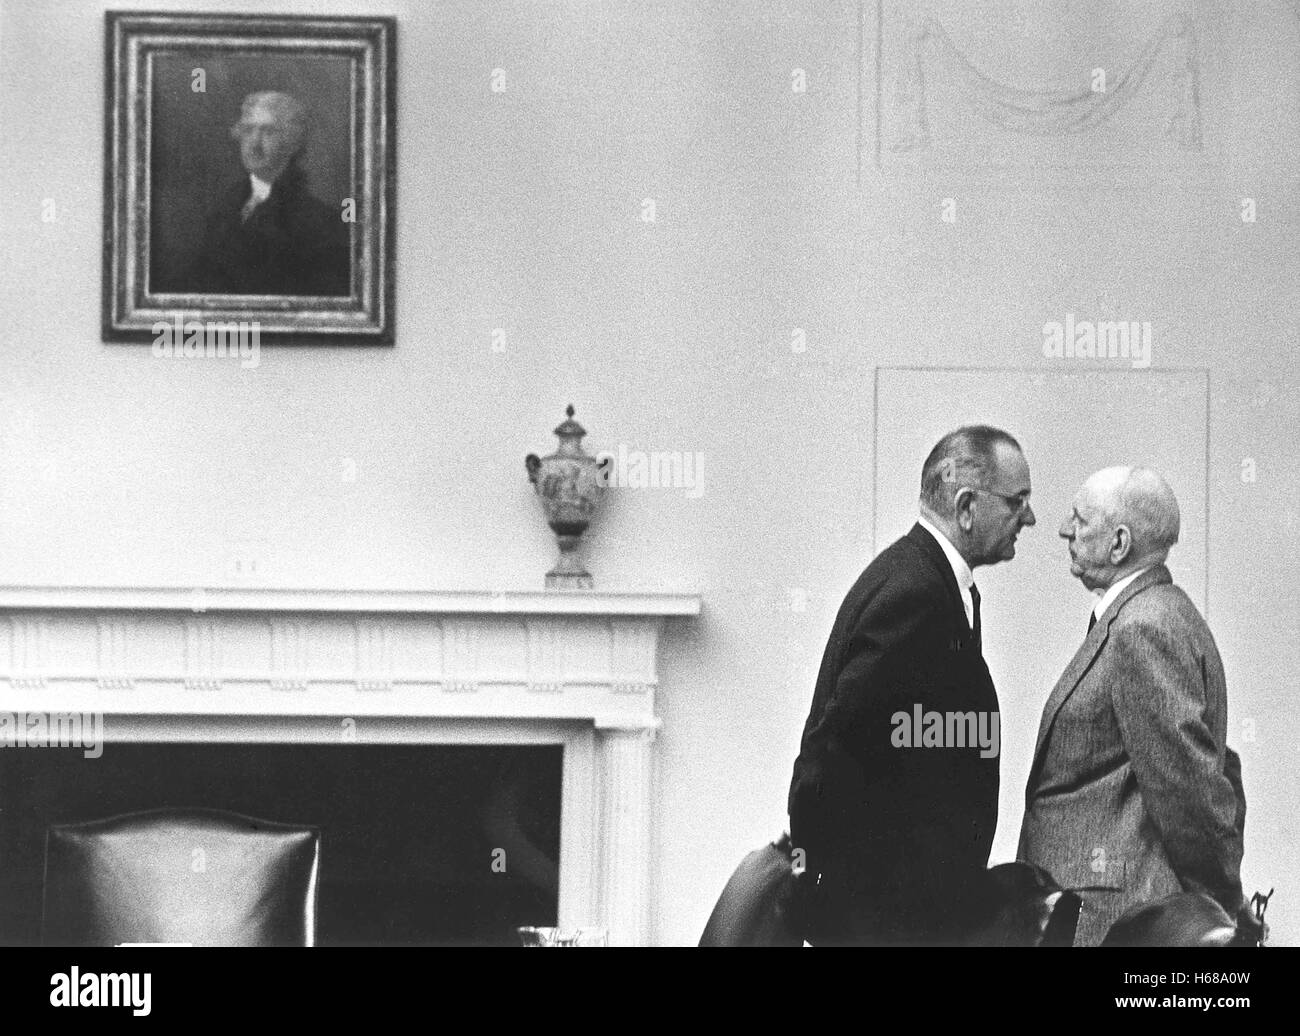 El presidente Lyndon Johnson, con el Senador Richard Russell en la Casa Blanca, el 7 de diciembre de 1963, Washington, DC. Fotografía de la Casa Blanca por Yoichi Okamoto (1915-1985). Esta impresión de archivo está disponible en los siguientes tamaños: 8" x 10" $15.95 w/ FREE SHIPPING 11' x 14' $23.95 w/ FREE SHIPPING 16' x 20' $59.95 w/ FREE SHIPPING 20' x 24' $99,95 w/ FREE SHIPPING * la filigrana Photoarchive americana no aparecerán en la impresión. Foto de stock